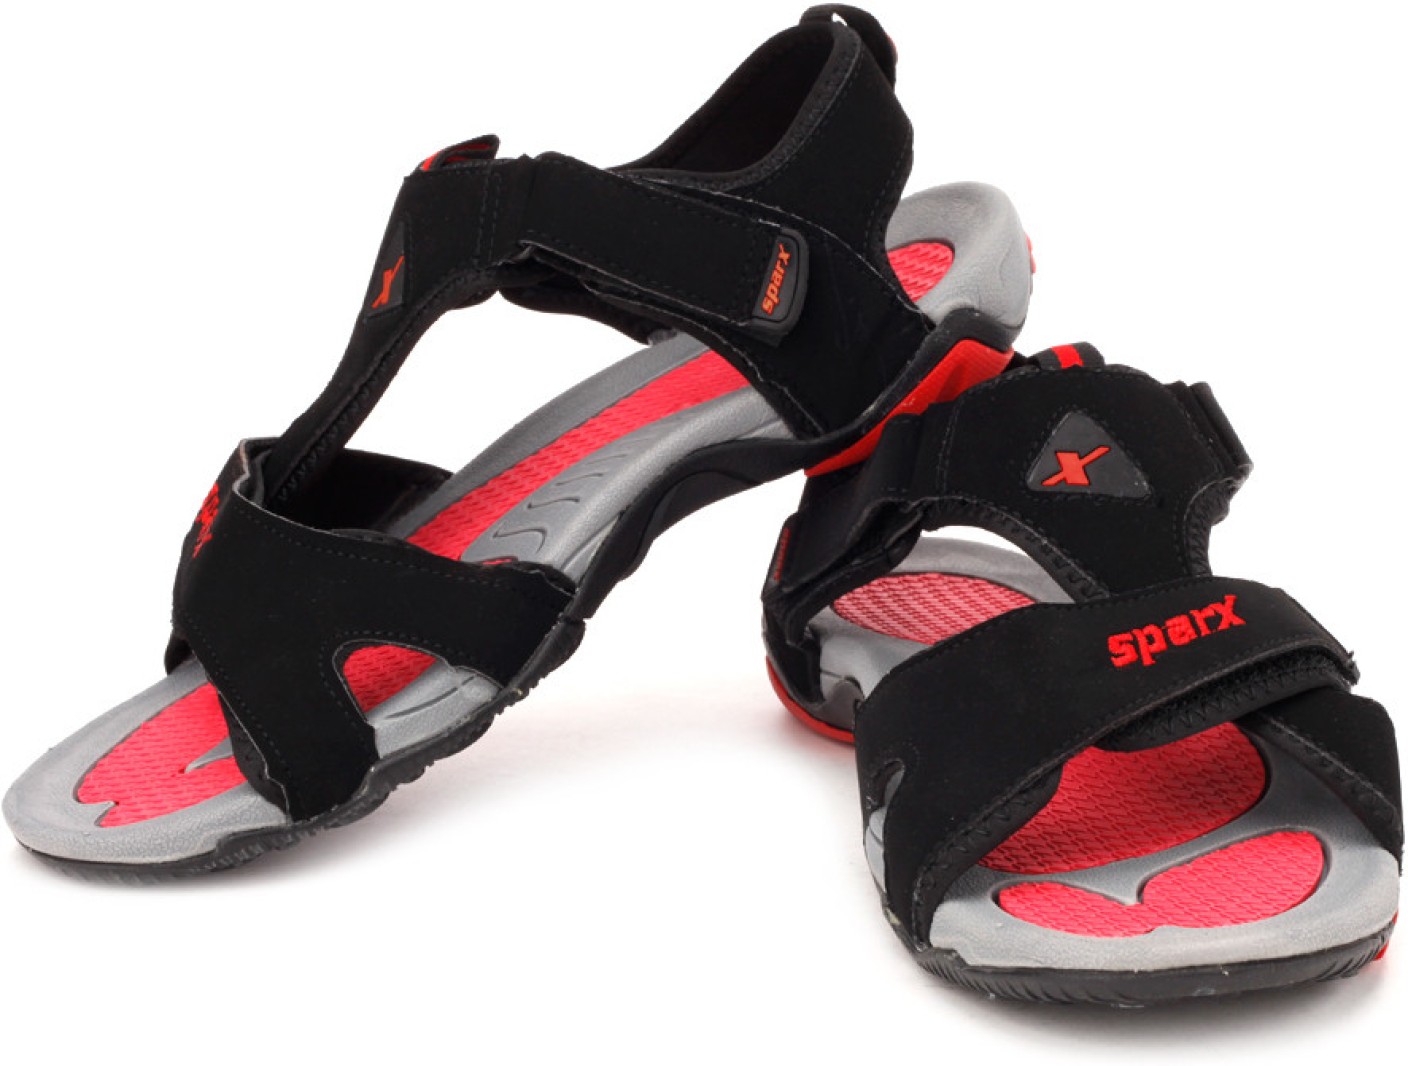 Sparx Men Black Red Sports Sandals - Buy Black Red Color Sparx Men ...